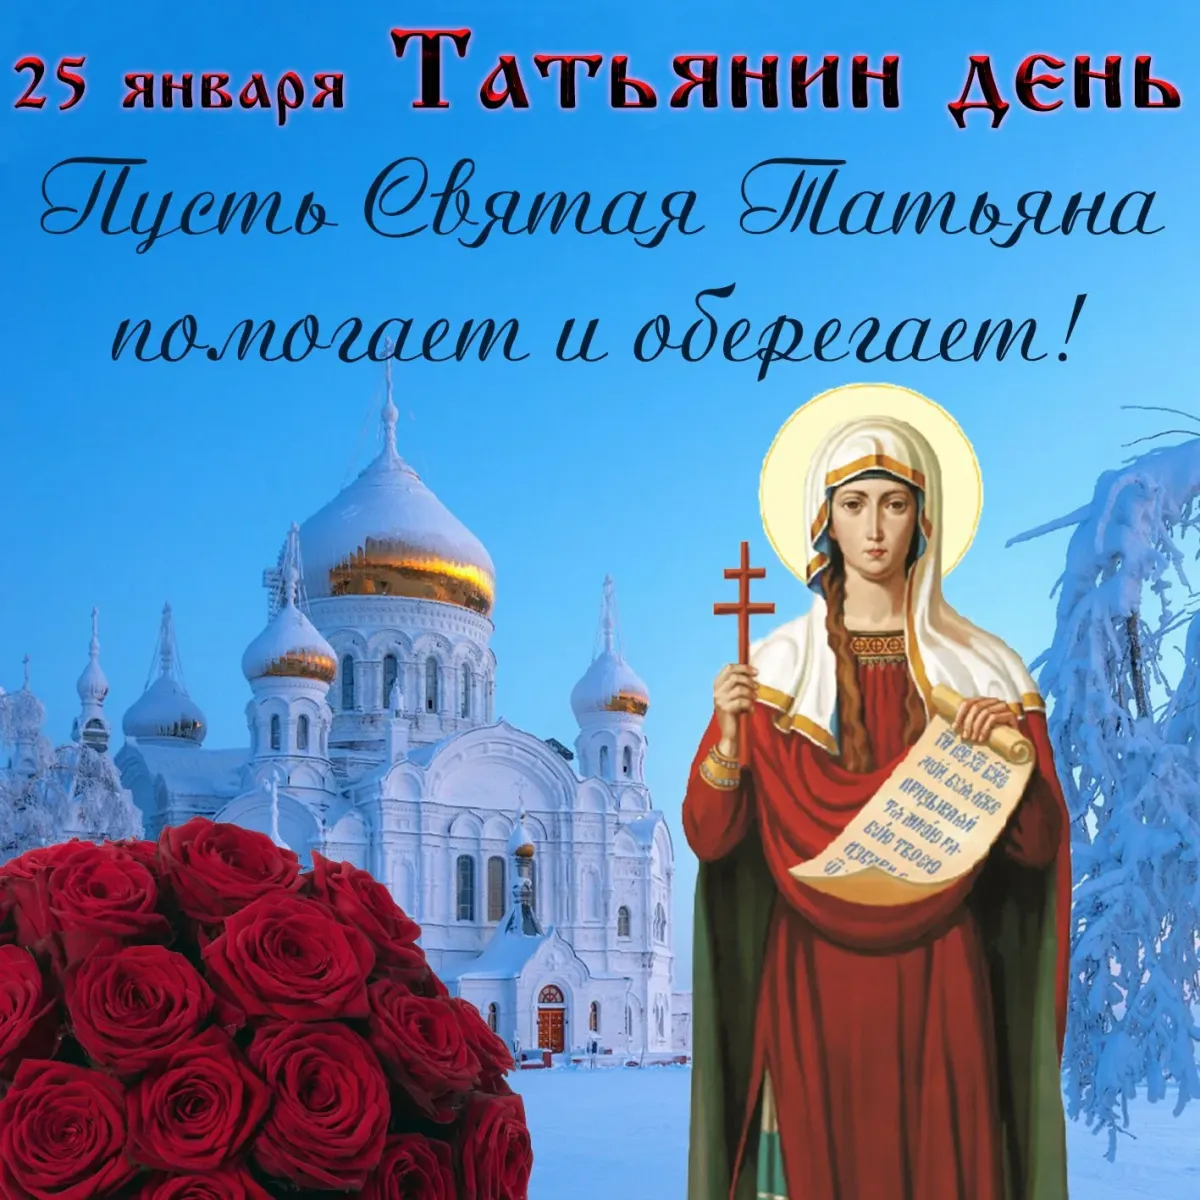 25 Января Святая мученица Татиана. Татьянин день поздравление. Татьянин день открытки с поздравлениями. Поздравления с днём Татьяны. 25 января открытки